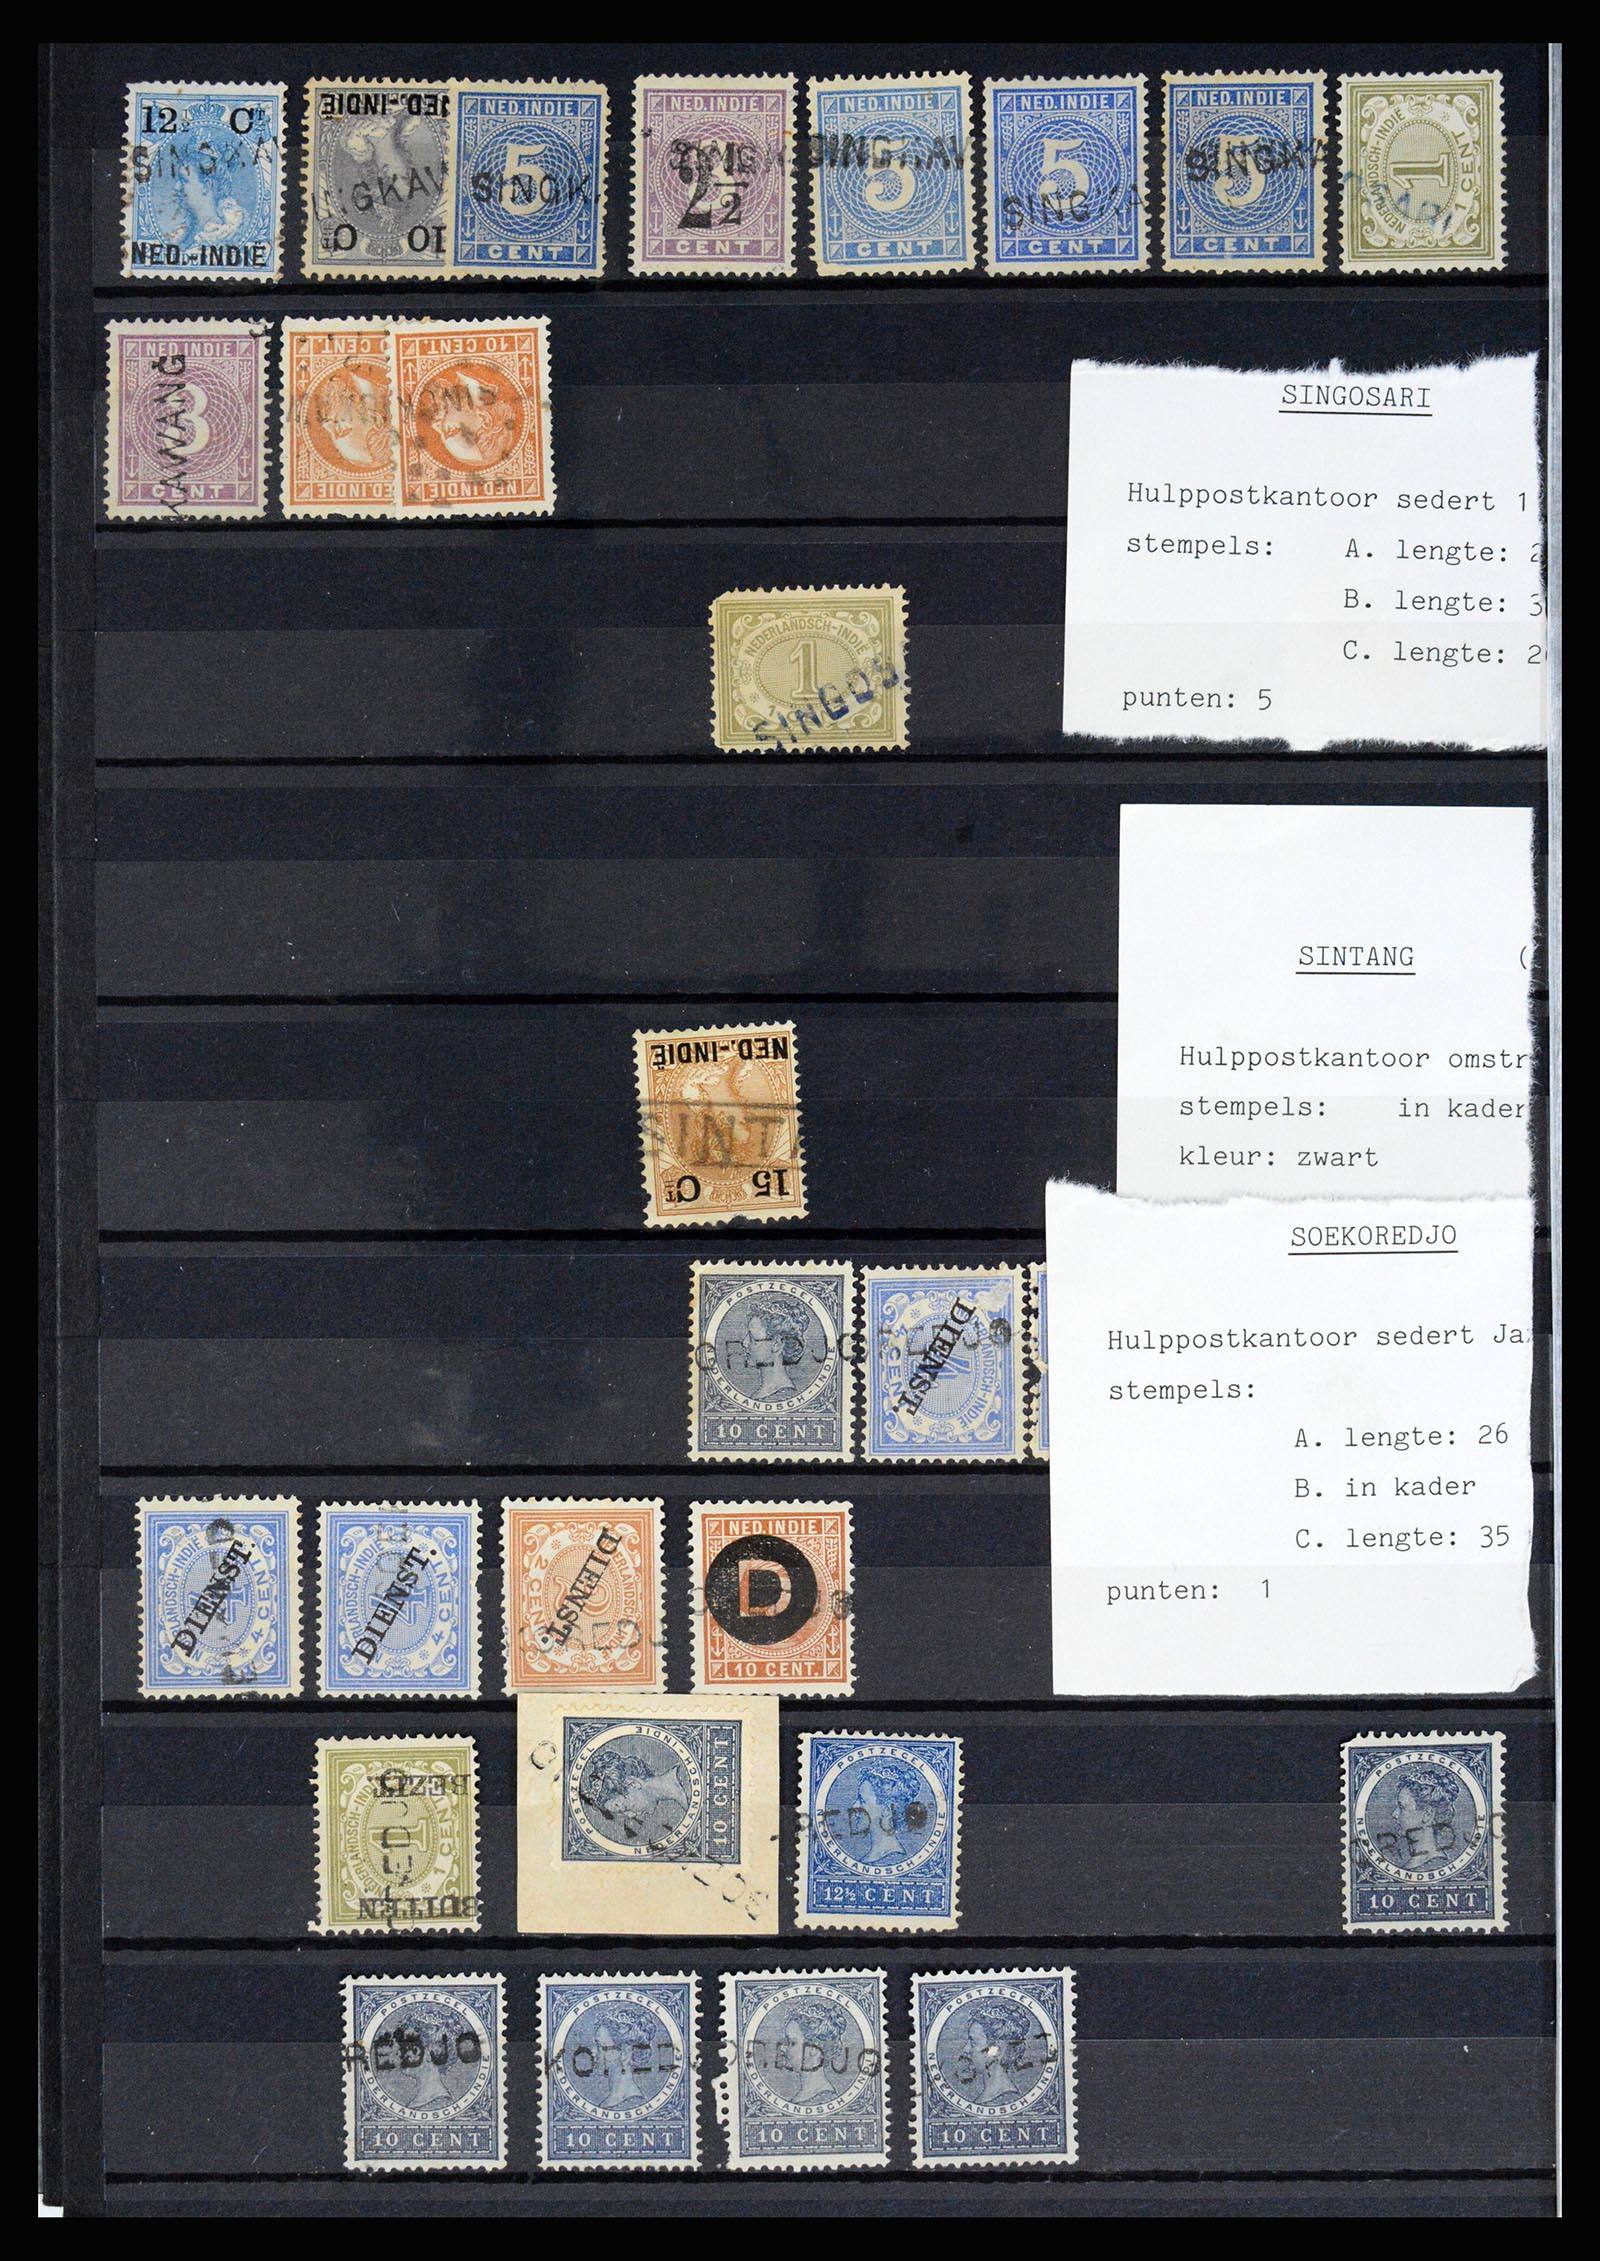 36512 064 - Stamp collection 36512 Nederlands Indië stempels 1872-1930.